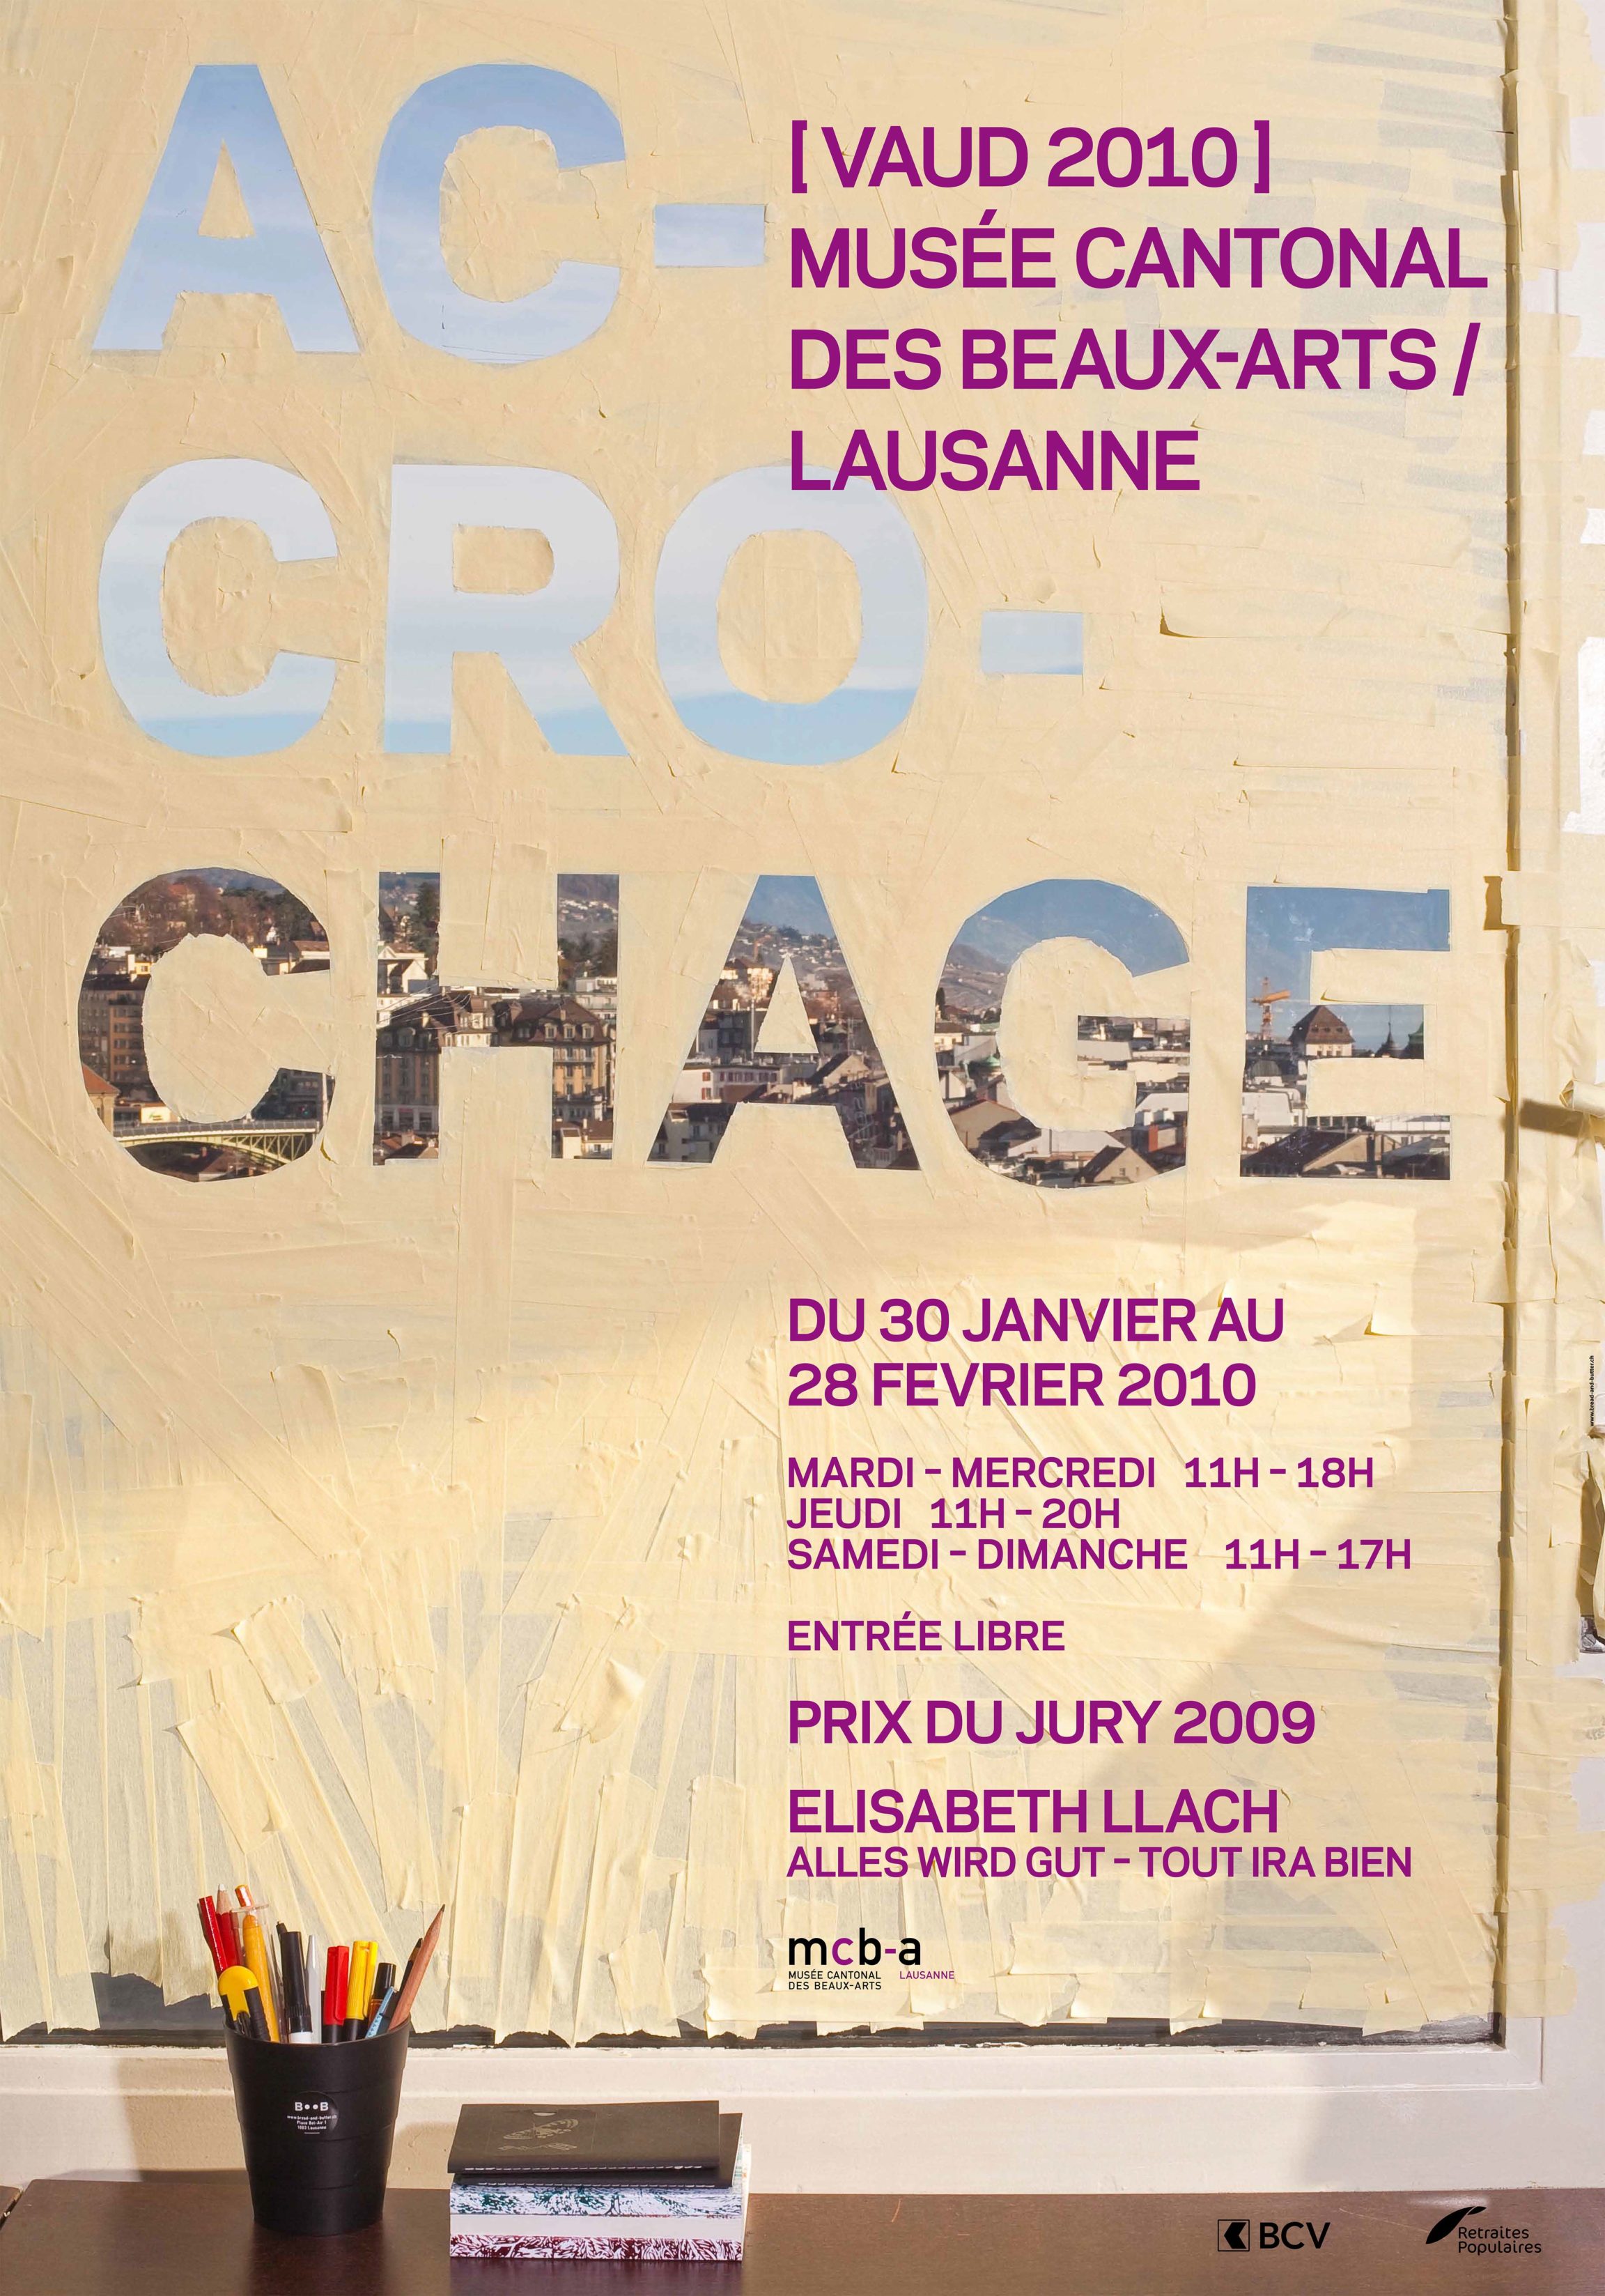 Accrochage [Vaud 2010] & <br> Elisabeth Llach, Prix du Jury 2009